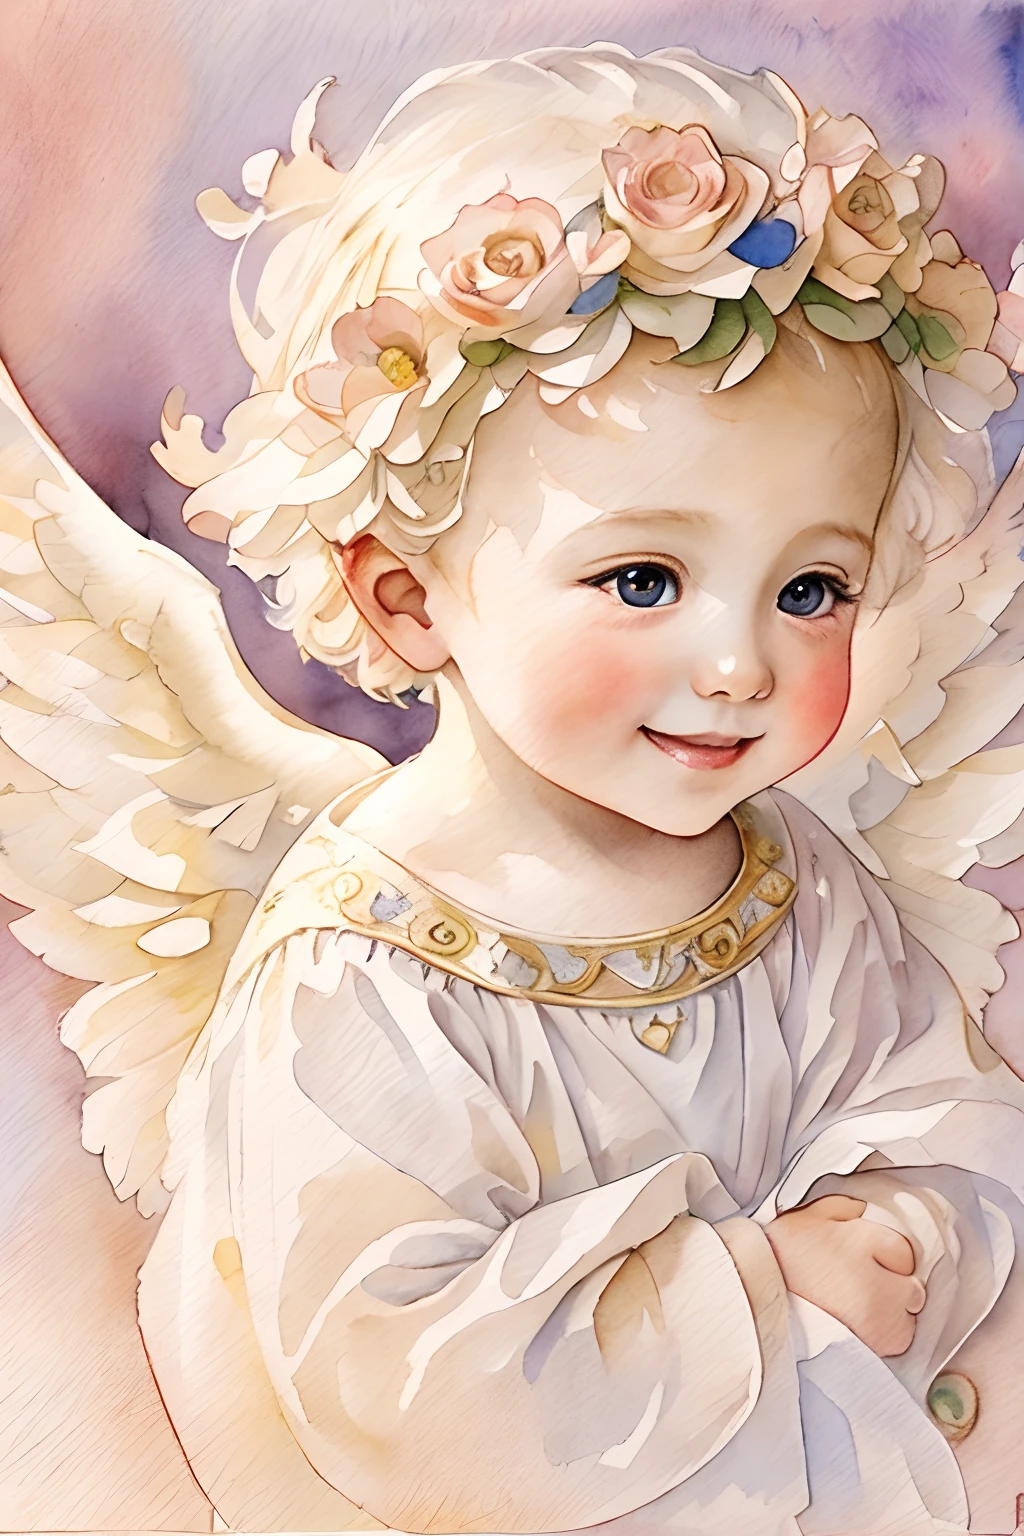 천사의 축복､밝은 배경、하트마크、유연함､미소、온화한､아기 천사､아르누보、수채화 물감